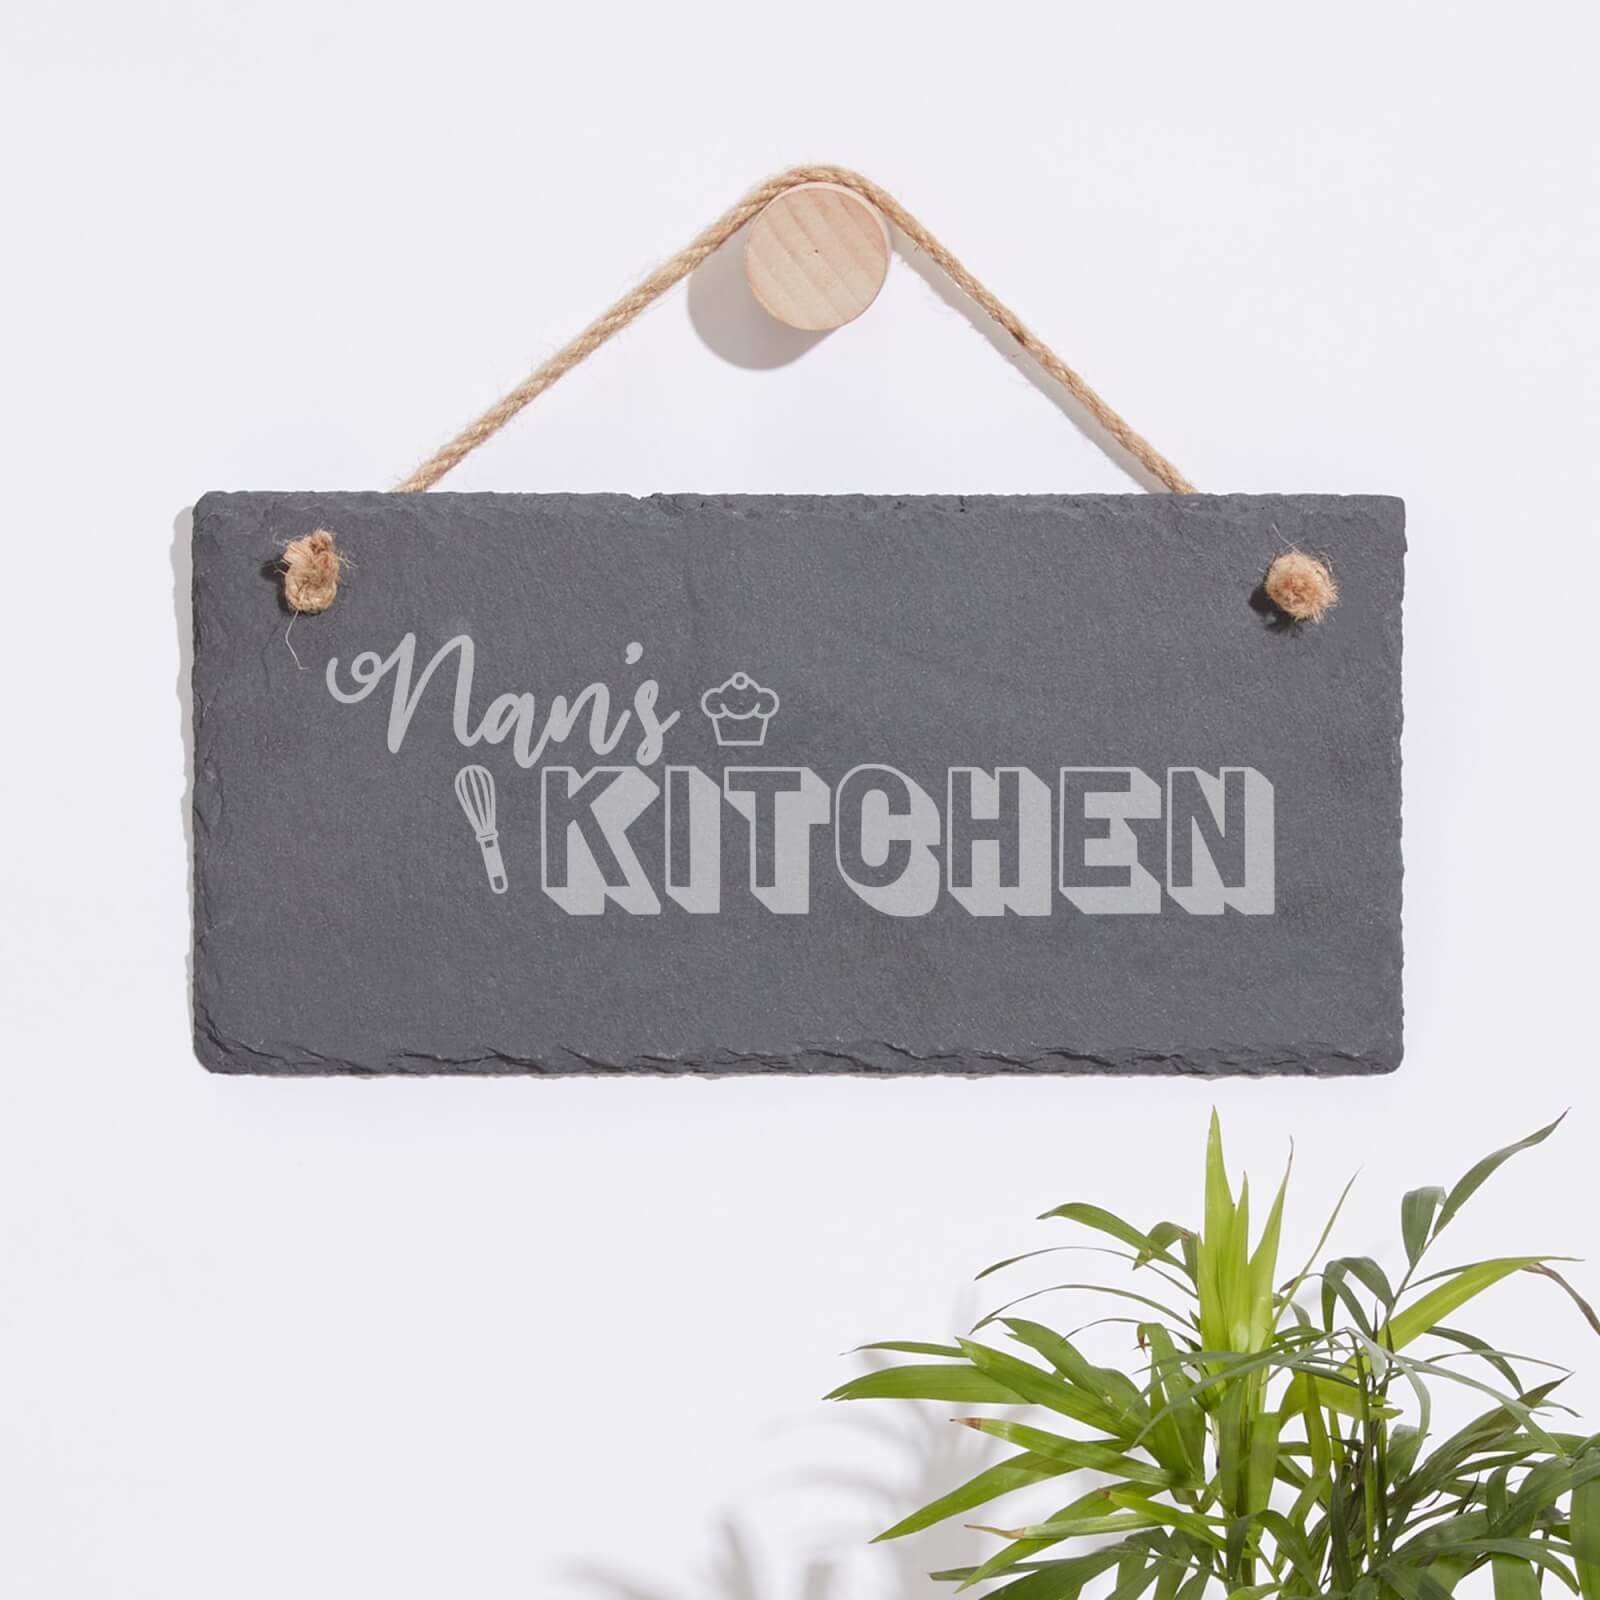 Nan's Kitchen Engraved Slate Hanging Sign